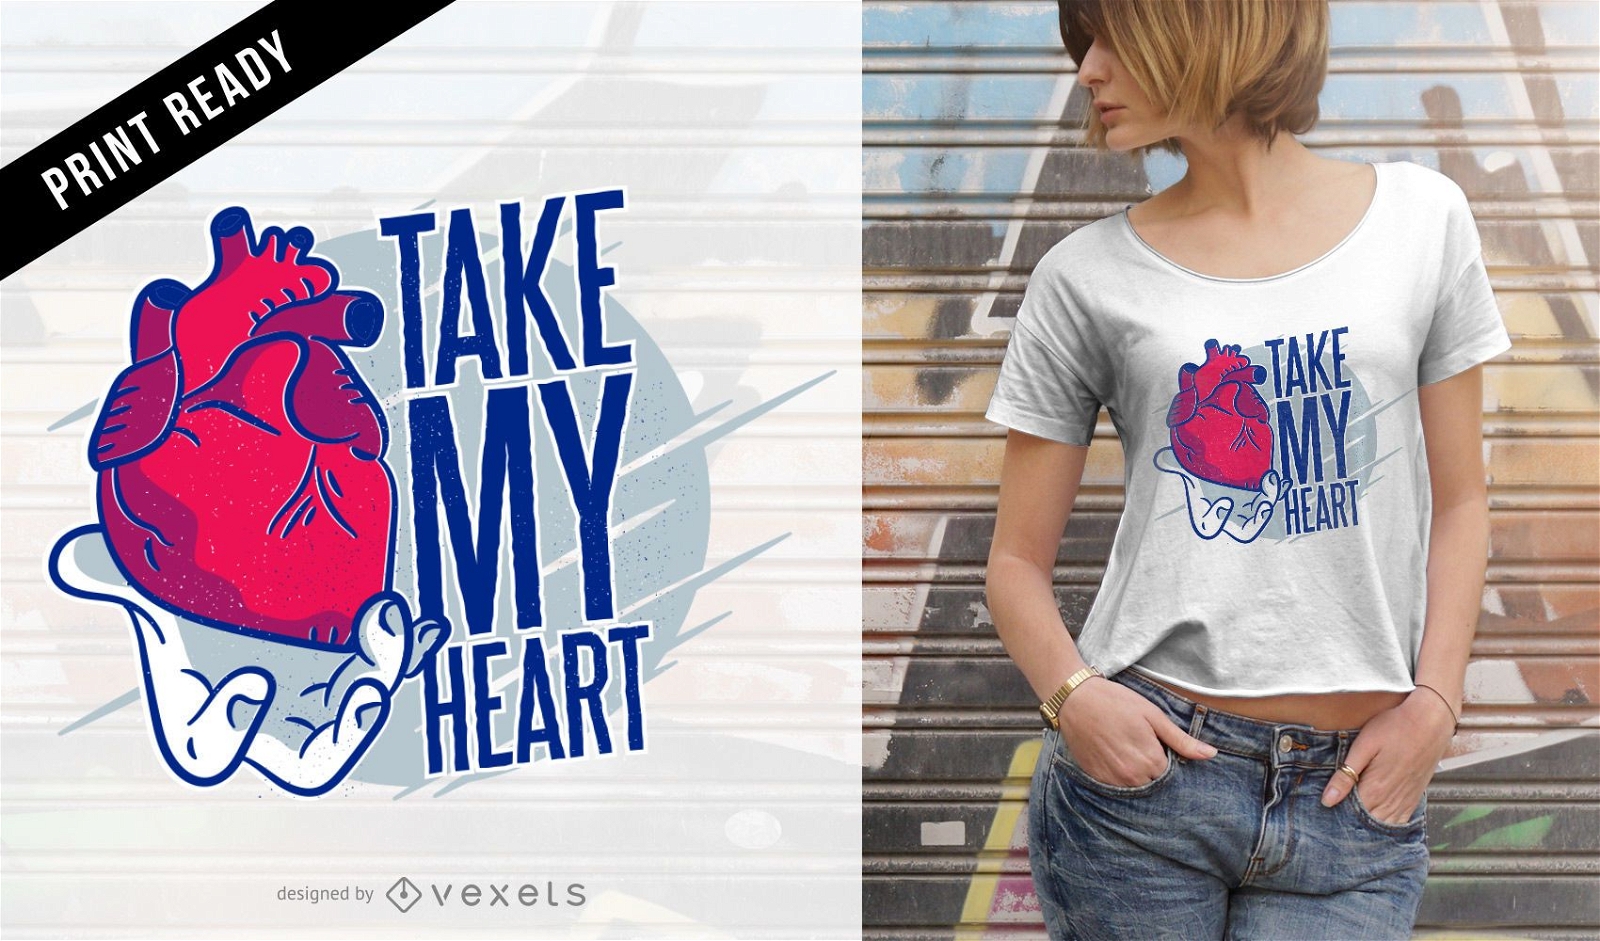 Take my heart t-shirt design